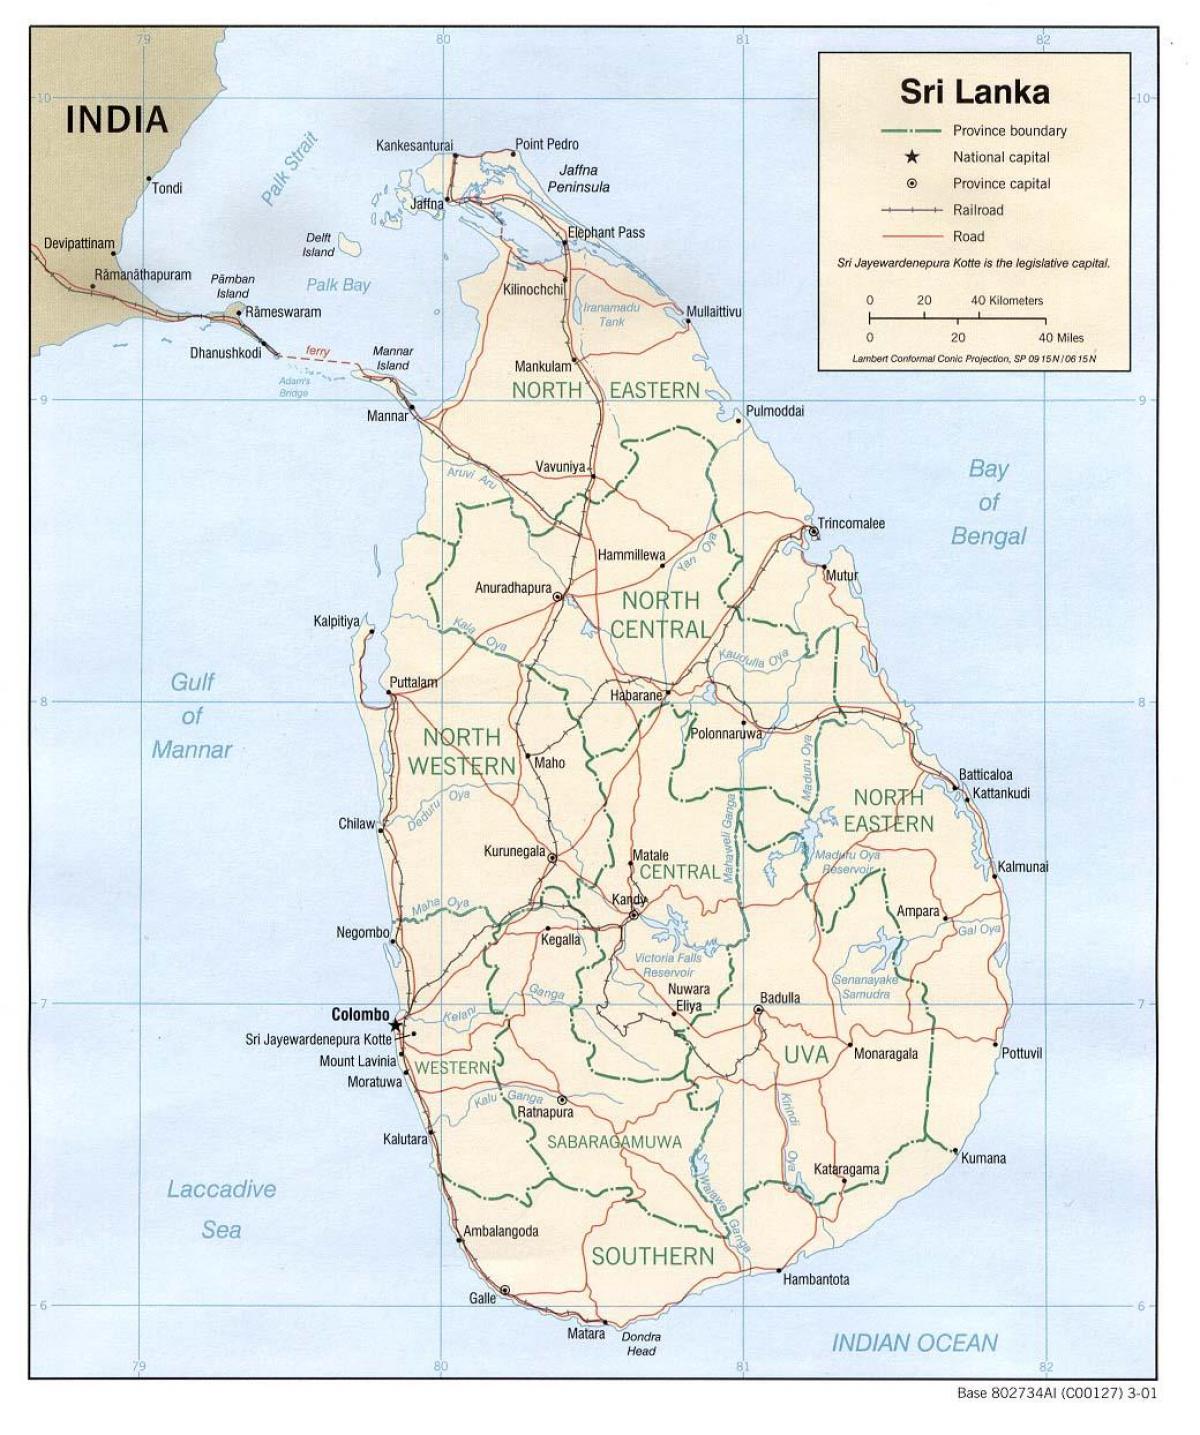 Sri Lanka basi ramani